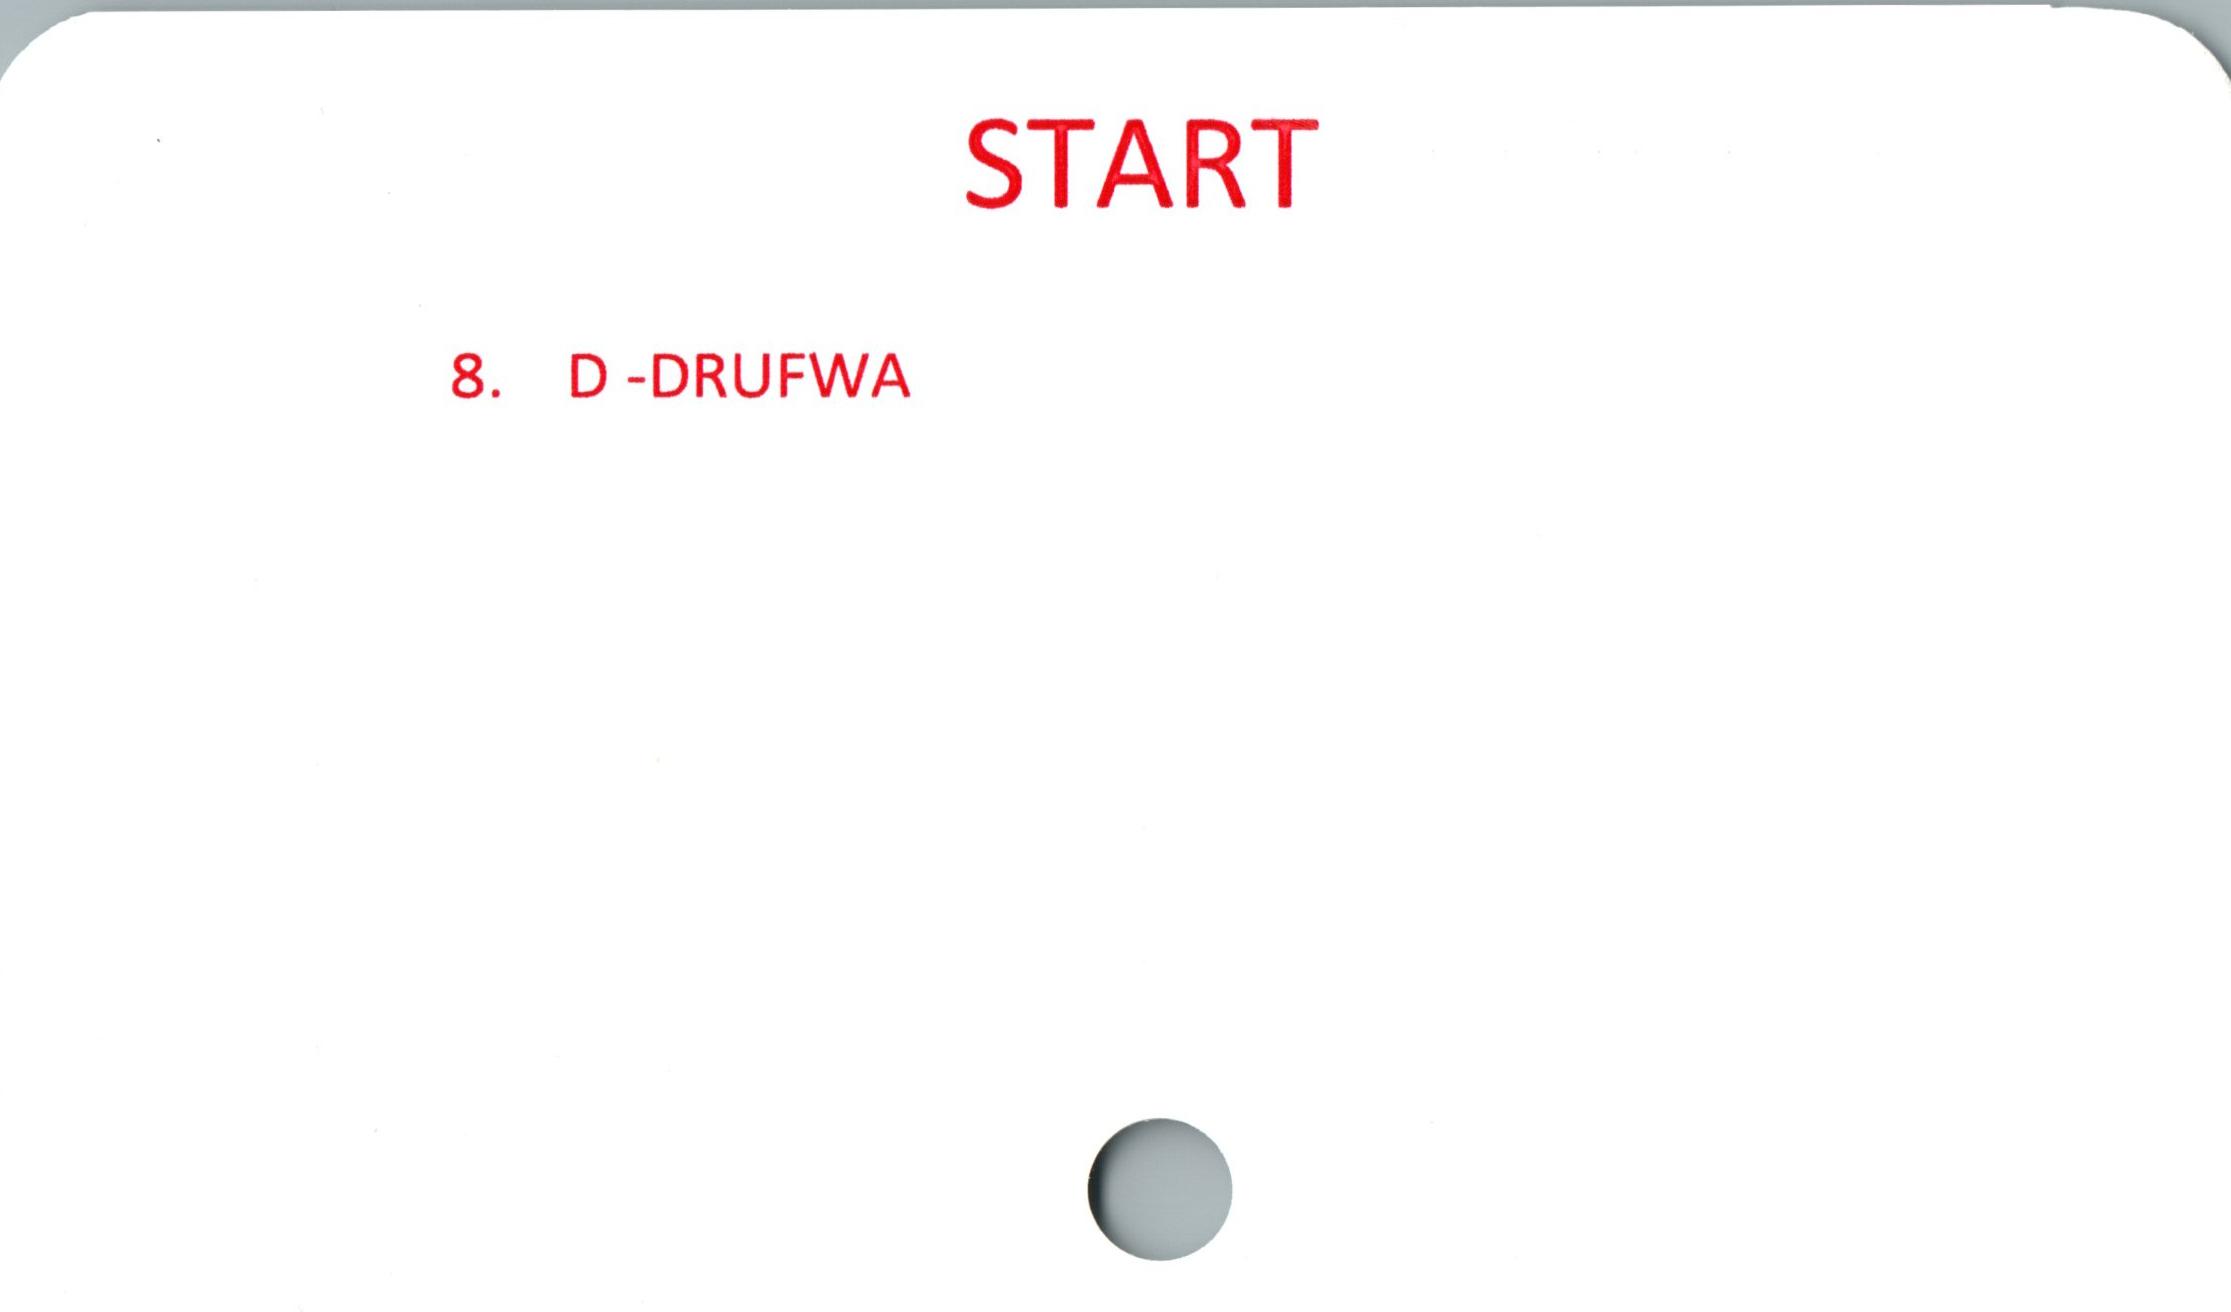  ﻿r

START

8. D-DRUFWA